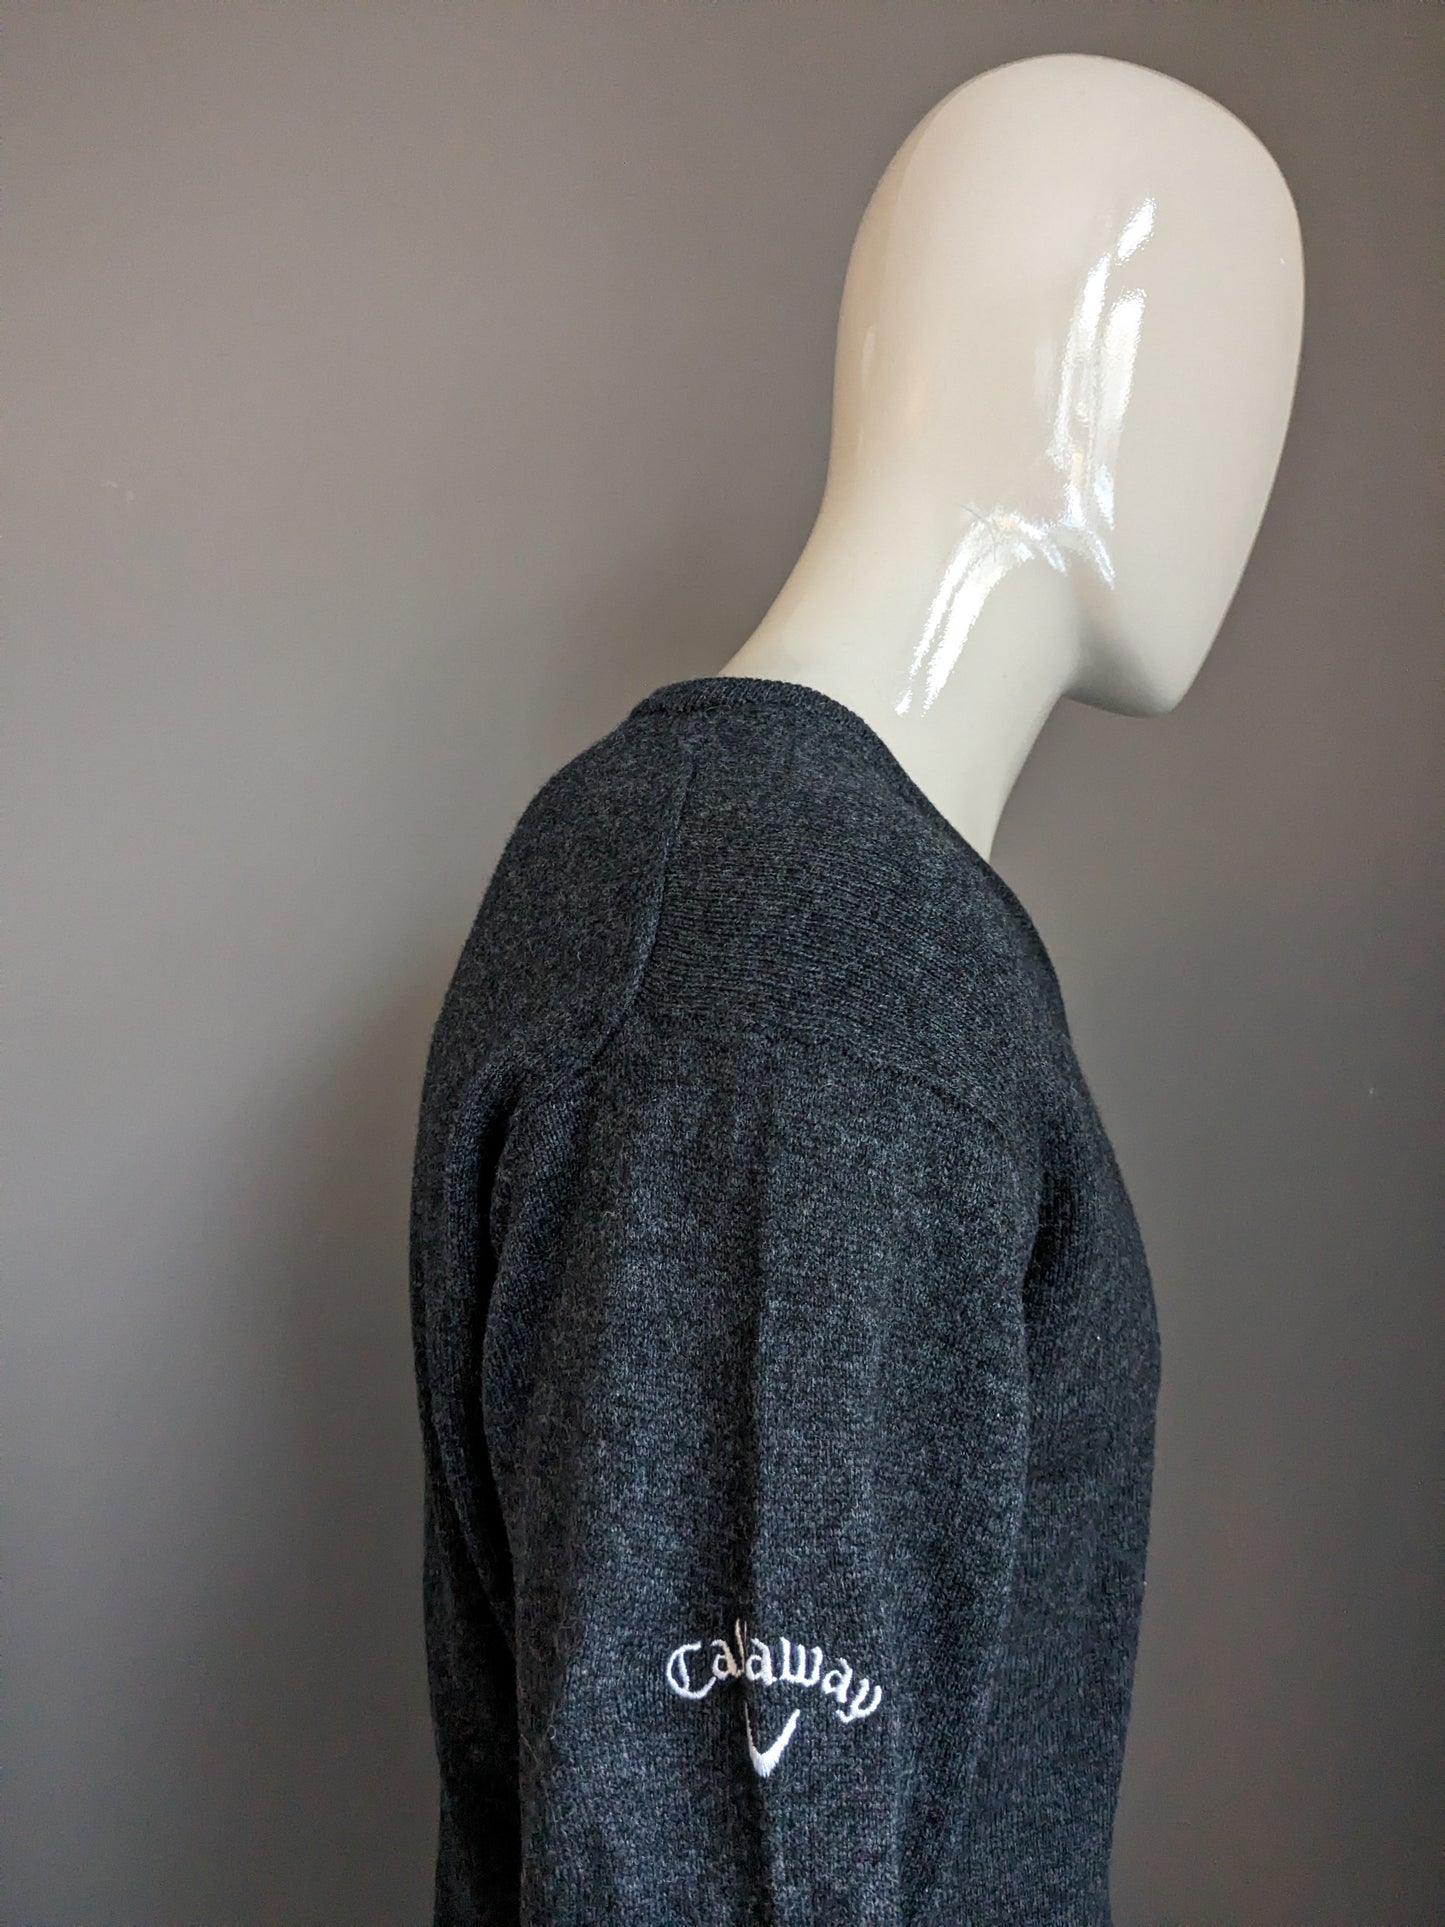 Callaway Woolen suéter con cuello en V. Gris oscuro mezclado. Tamaño S.